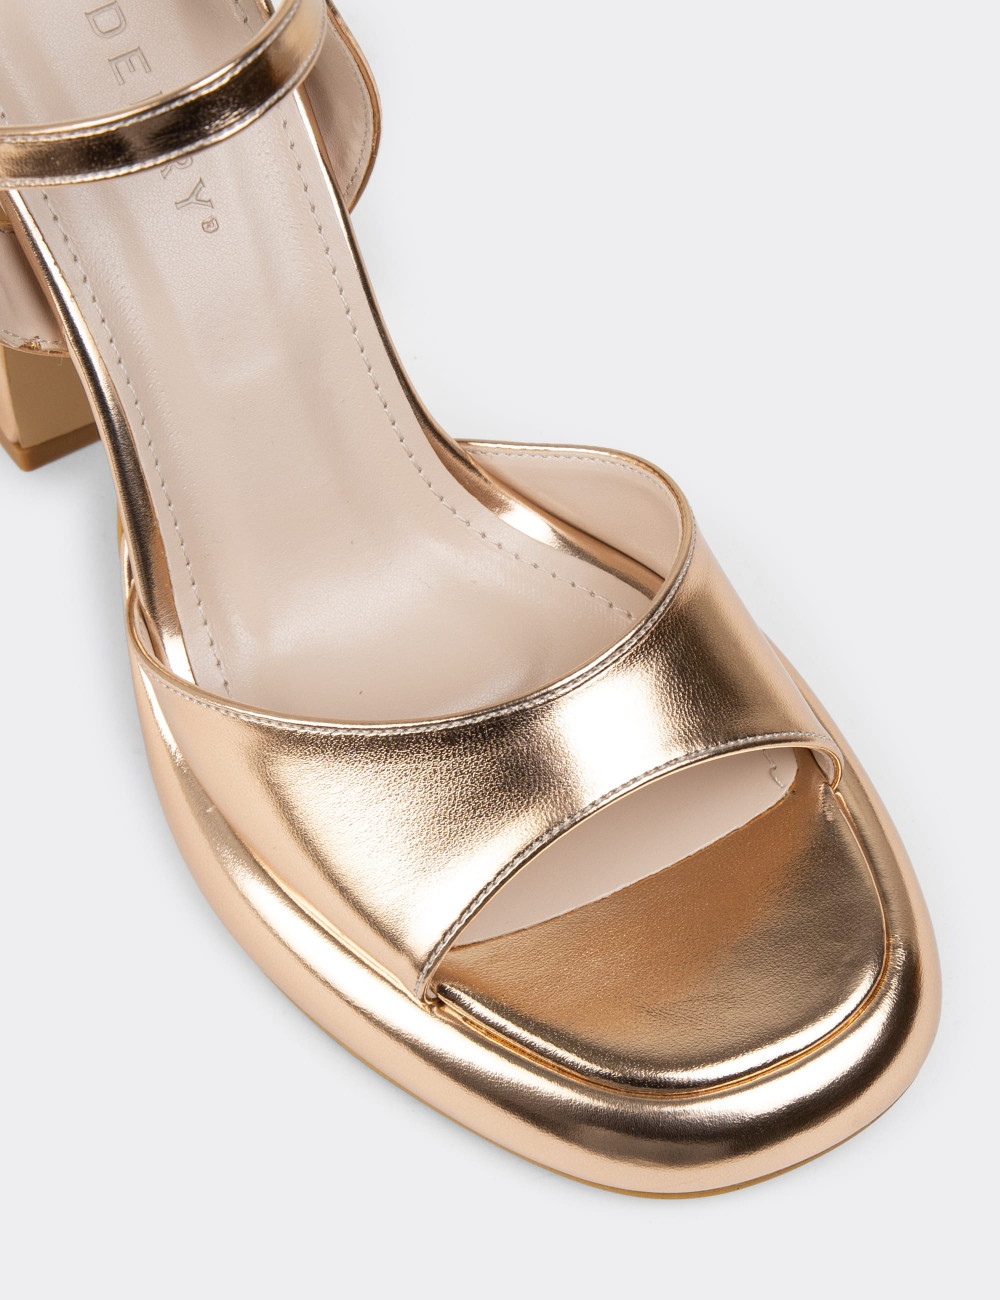 Altın Rengi Platform Topuklu Kadın Abiye Ayakkabı - S0128ZALTM01